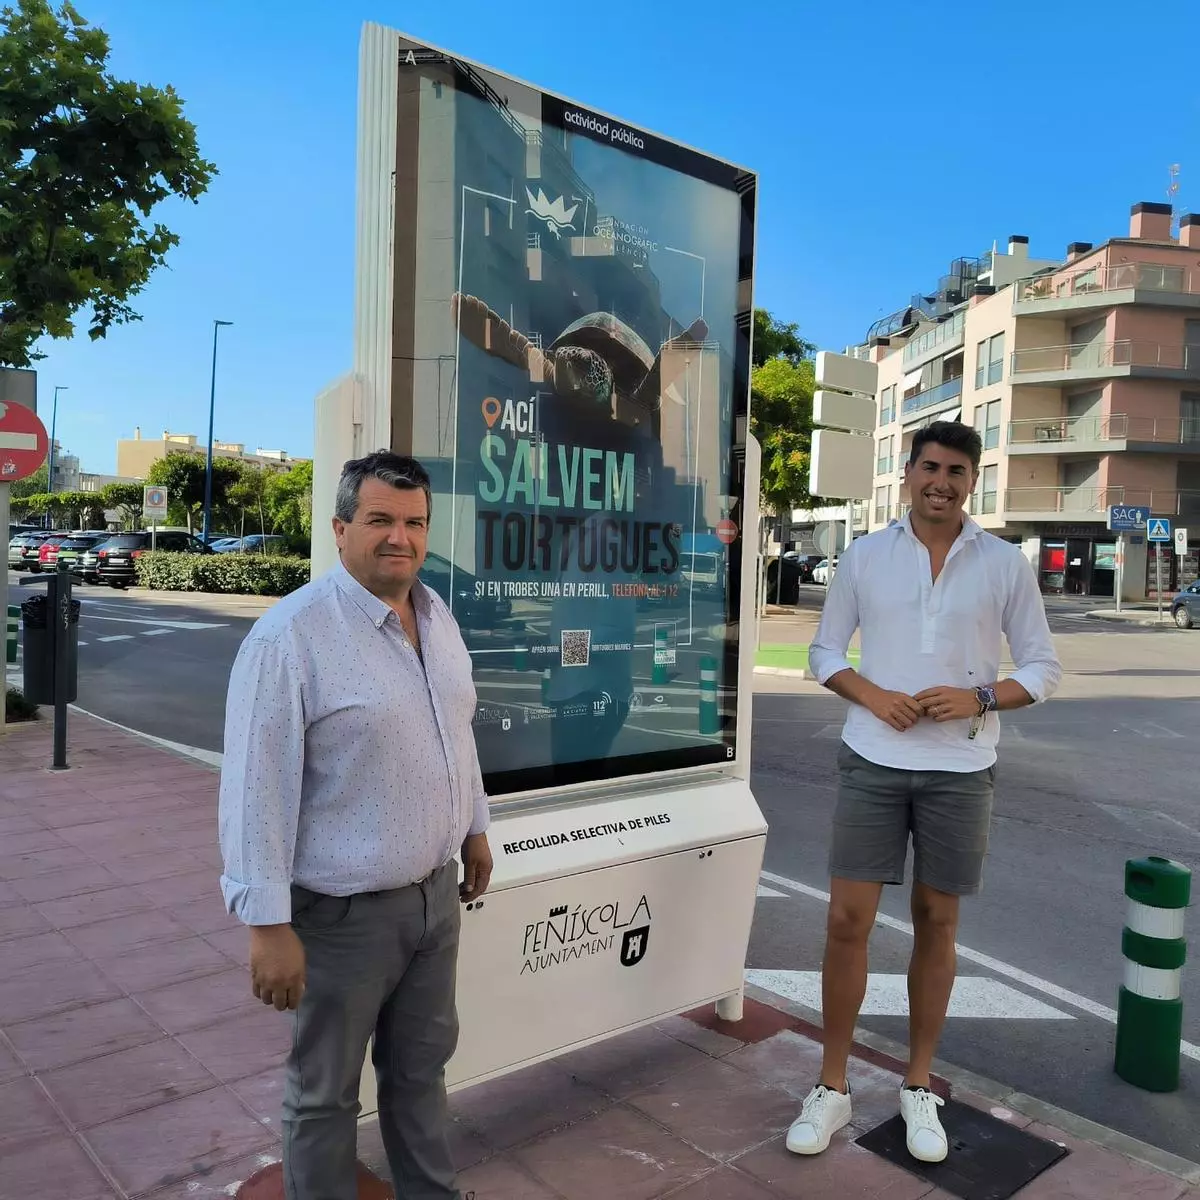 Peñíscola se suma, un nuevo año, a la campaña de sensibilización "Tortugues al Mediterrani"